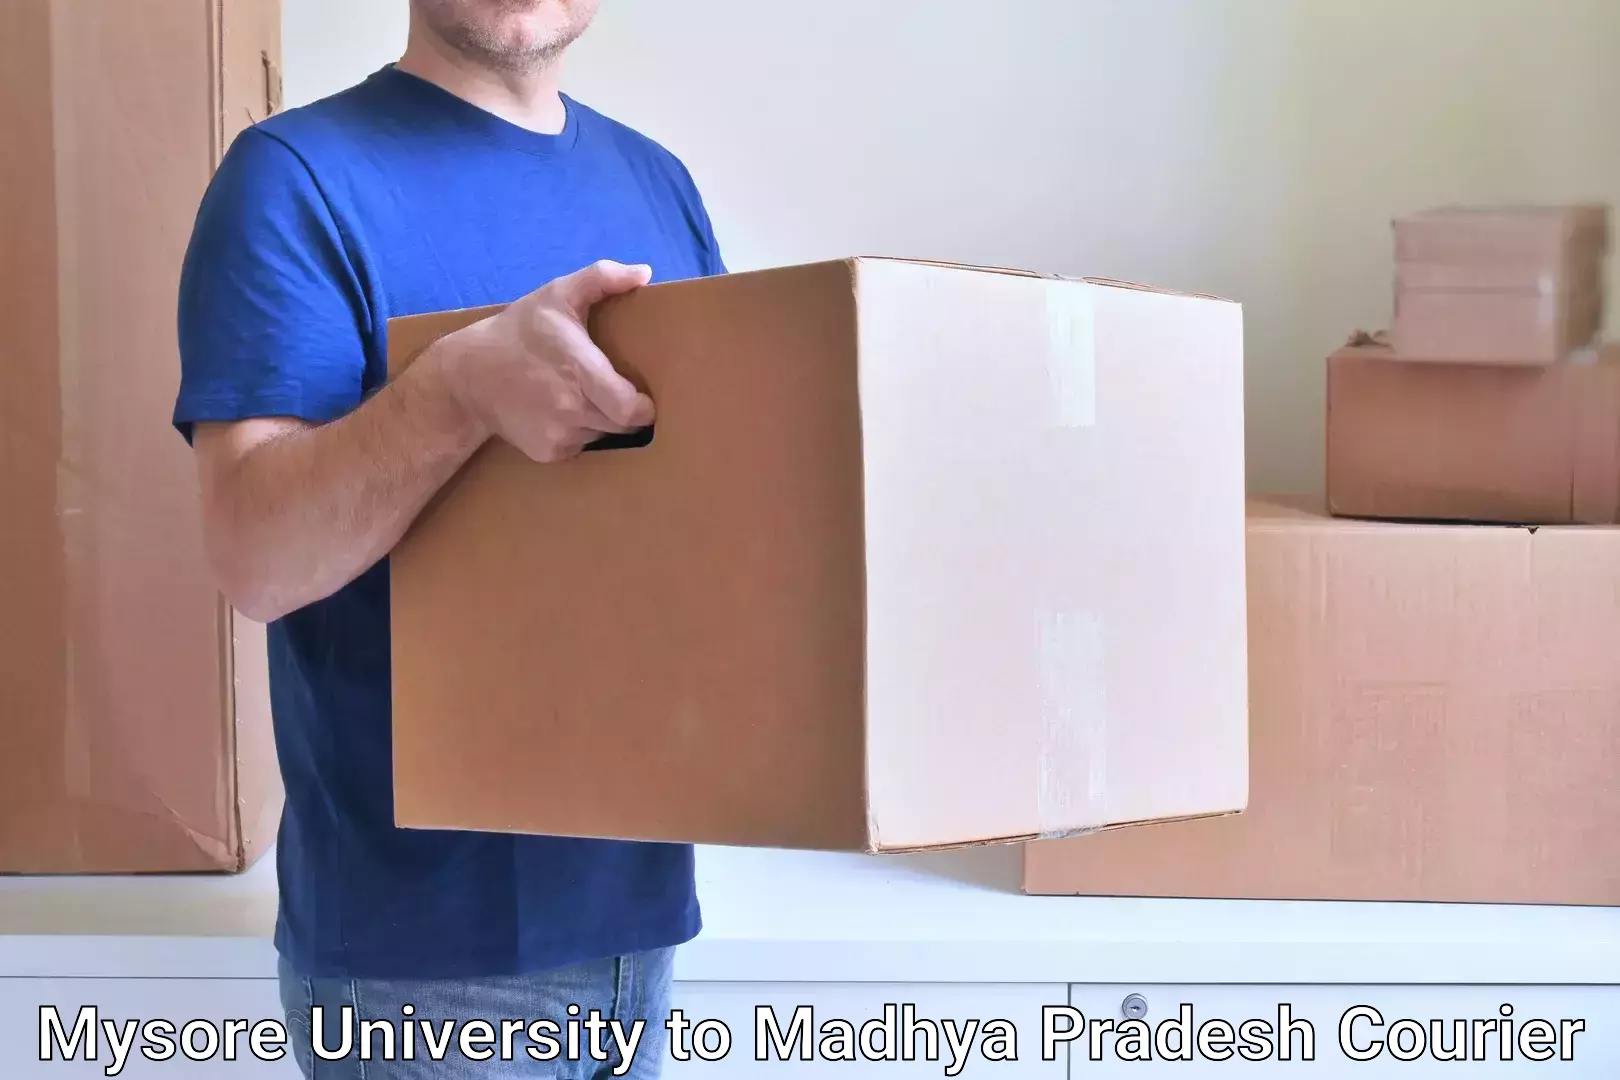 Fragile item shipping Mysore University to Jatara